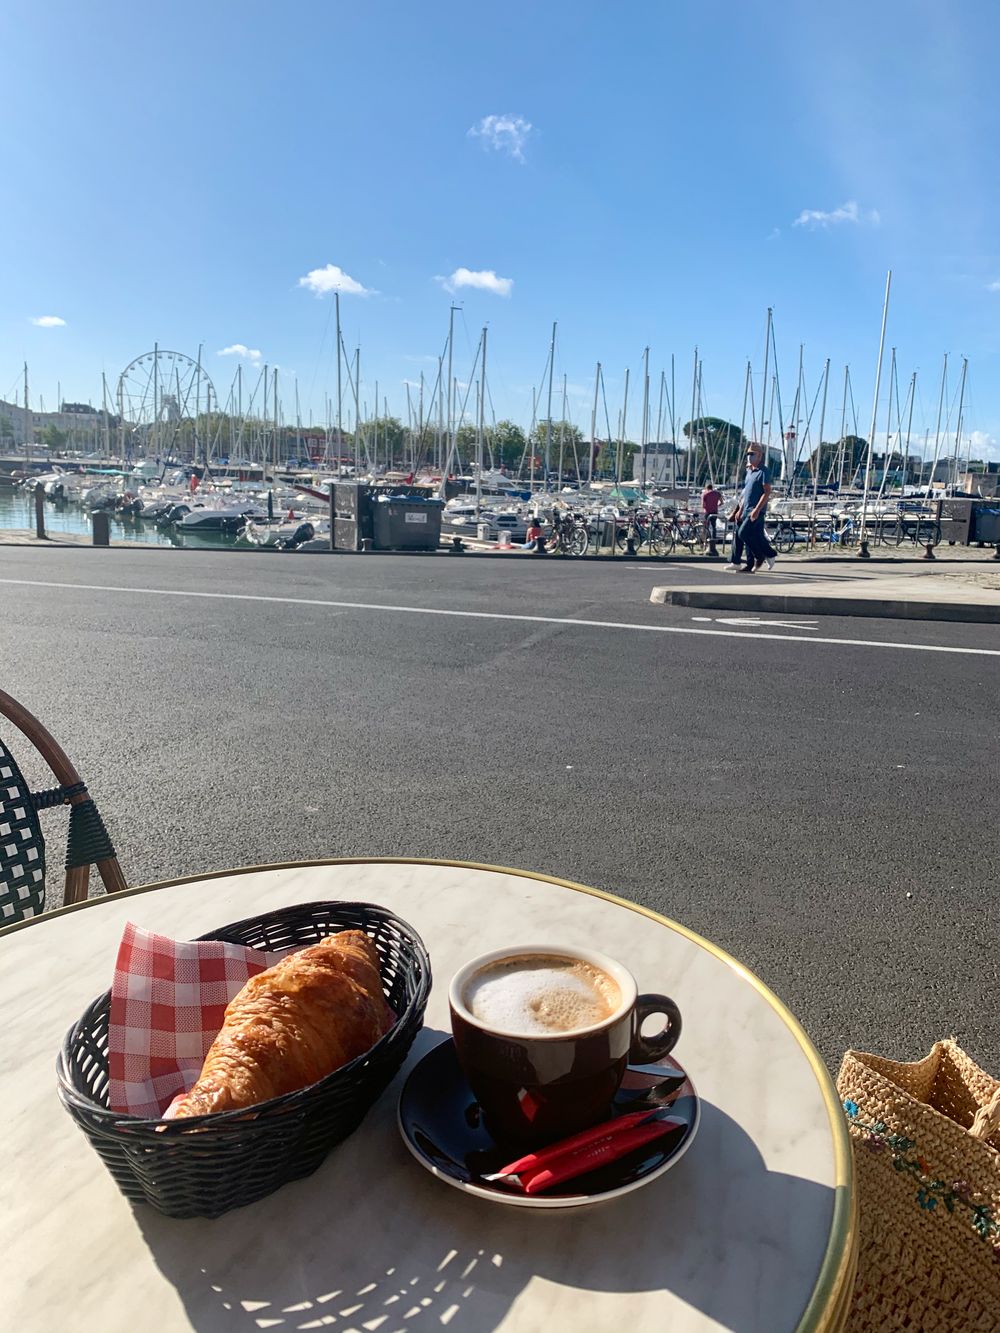 Café Croissant at Vieux Port, La Rochelle France